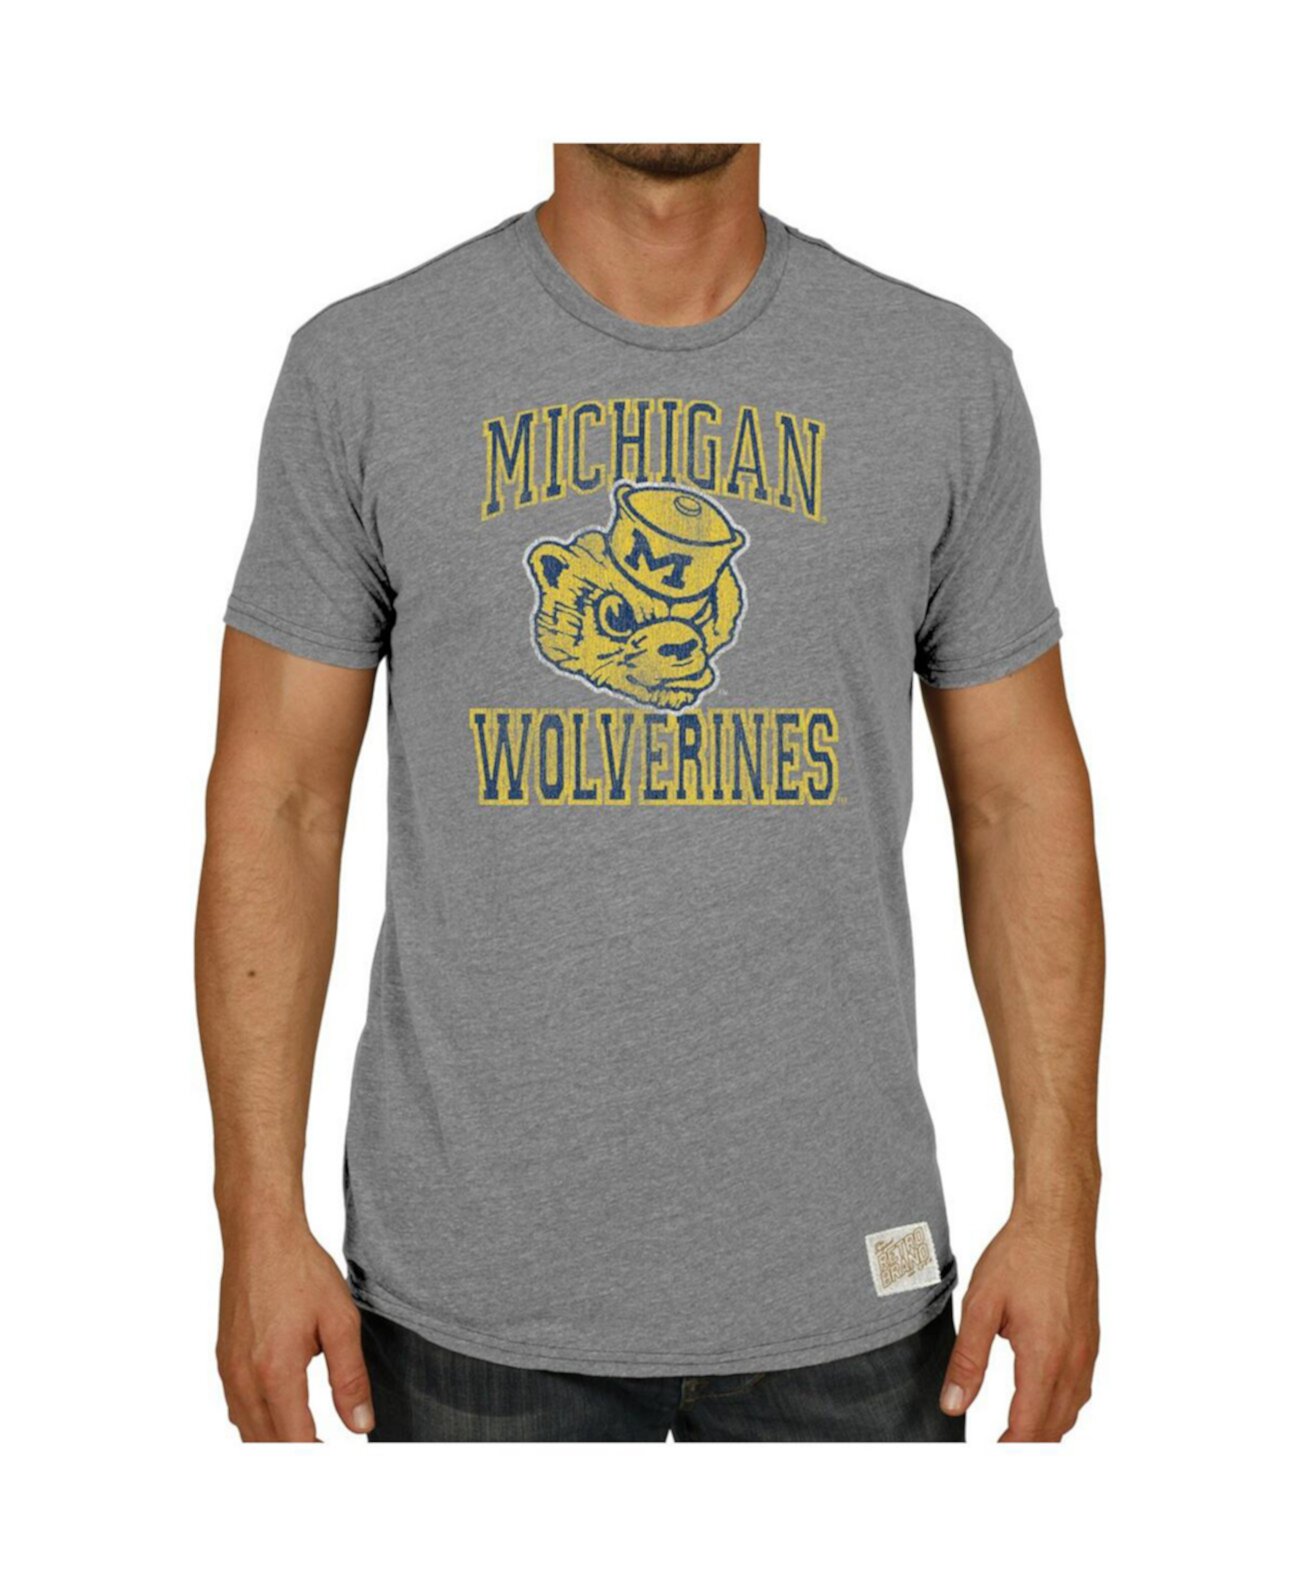 Мужская футболка Heather Grey Michigan Wolverines в винтажном стиле с надписью Wolverbear Tri-Blend Original Retro Brand